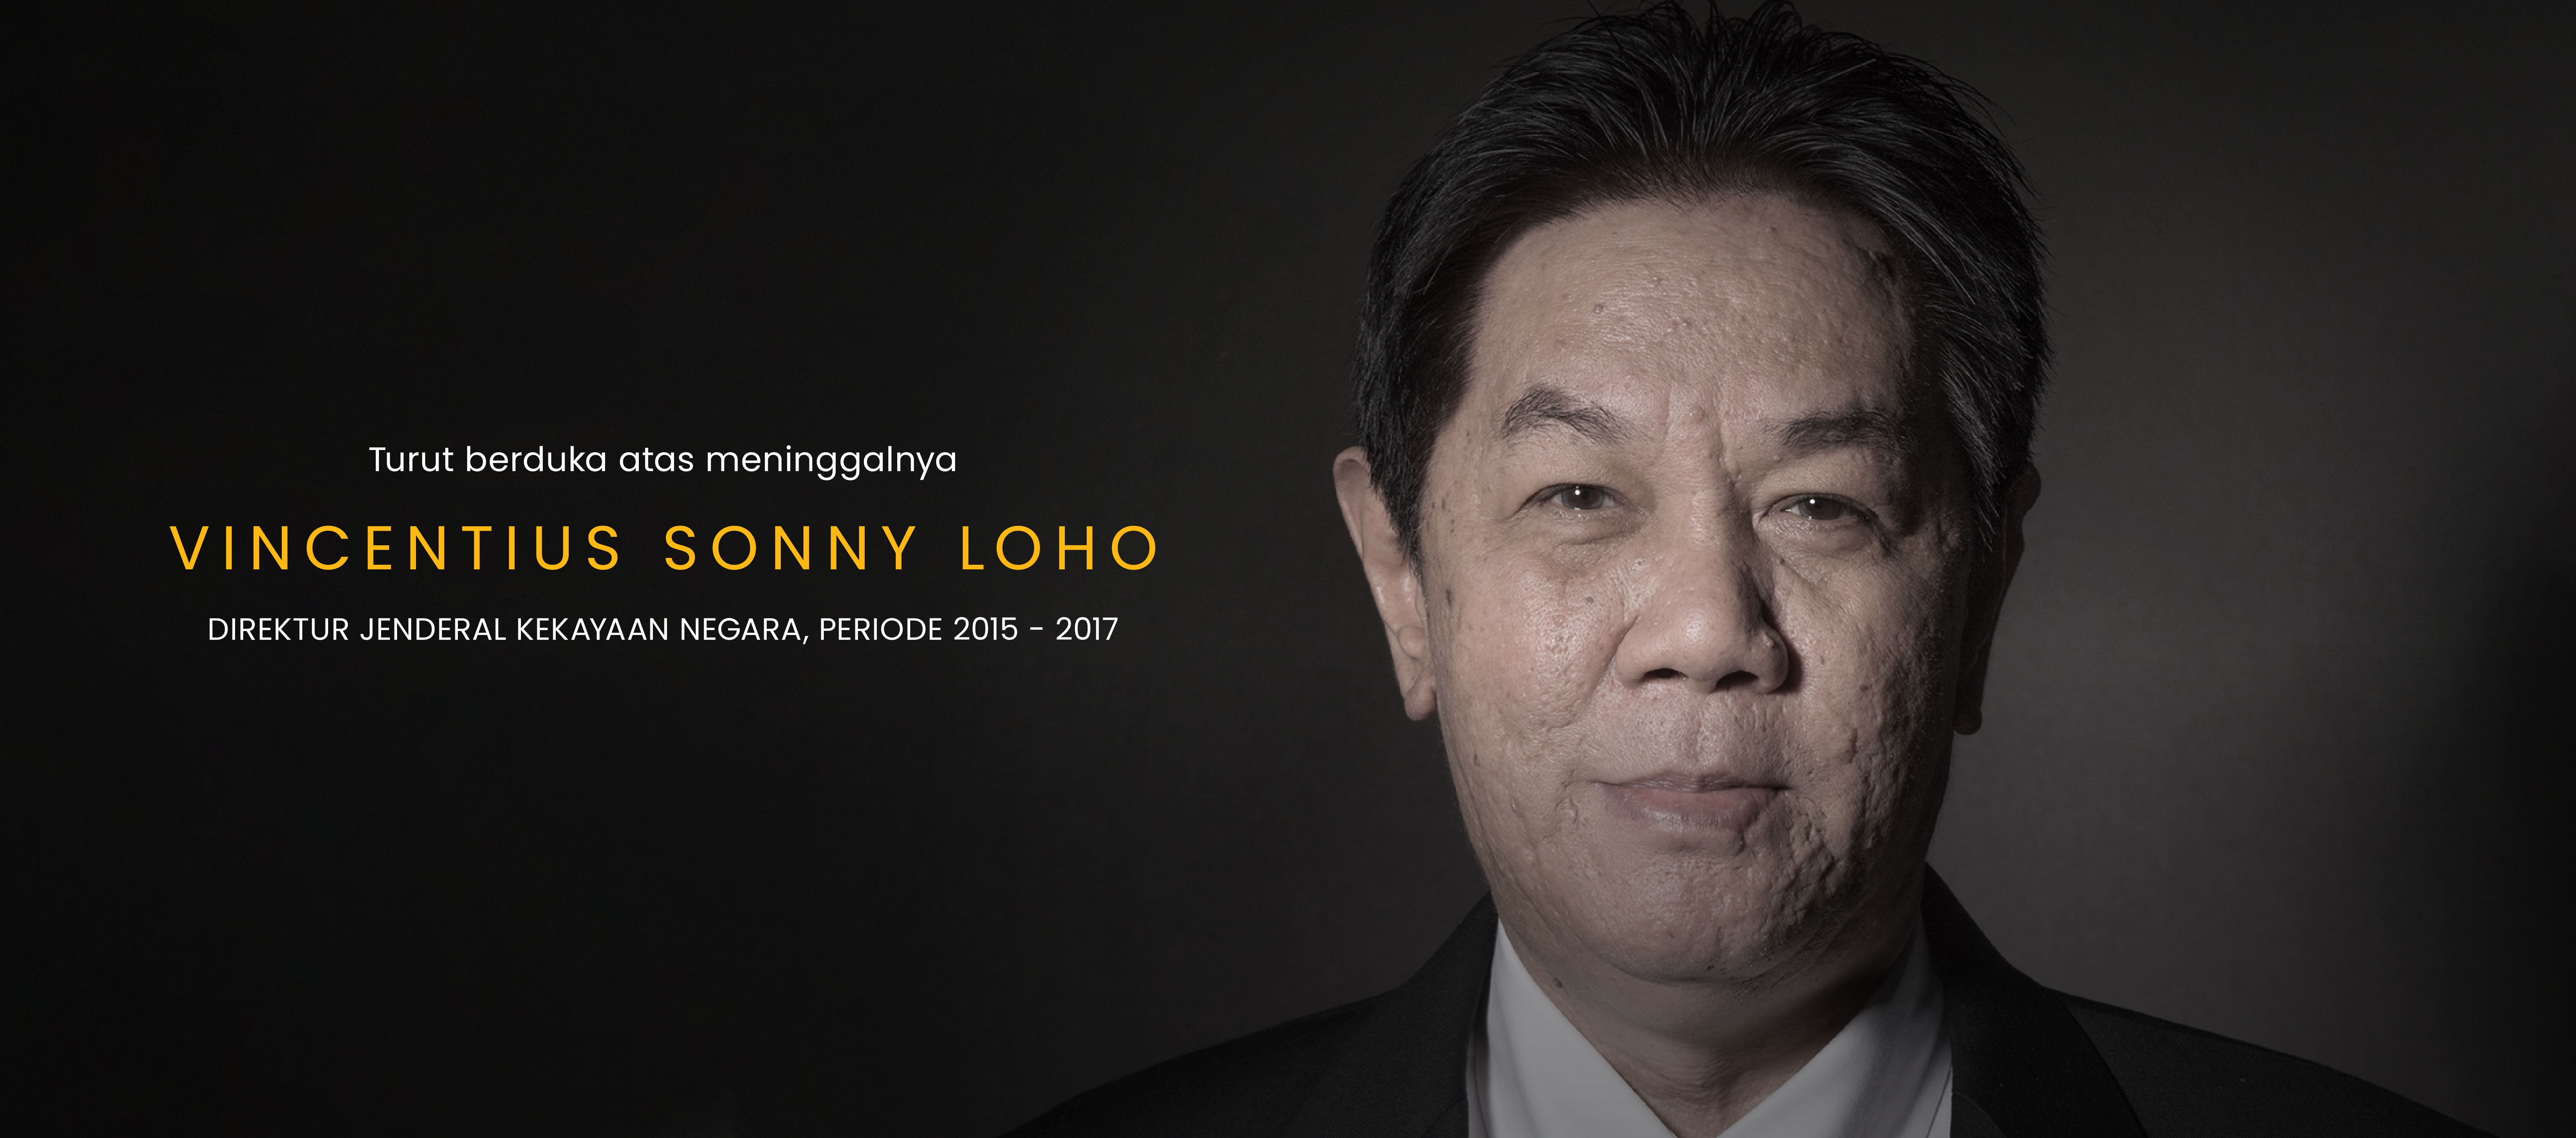 Bapak Vincentius Sonny Loho (Sonny) Direktur Jenderal Kekayaan Negara Periode 2015-2017